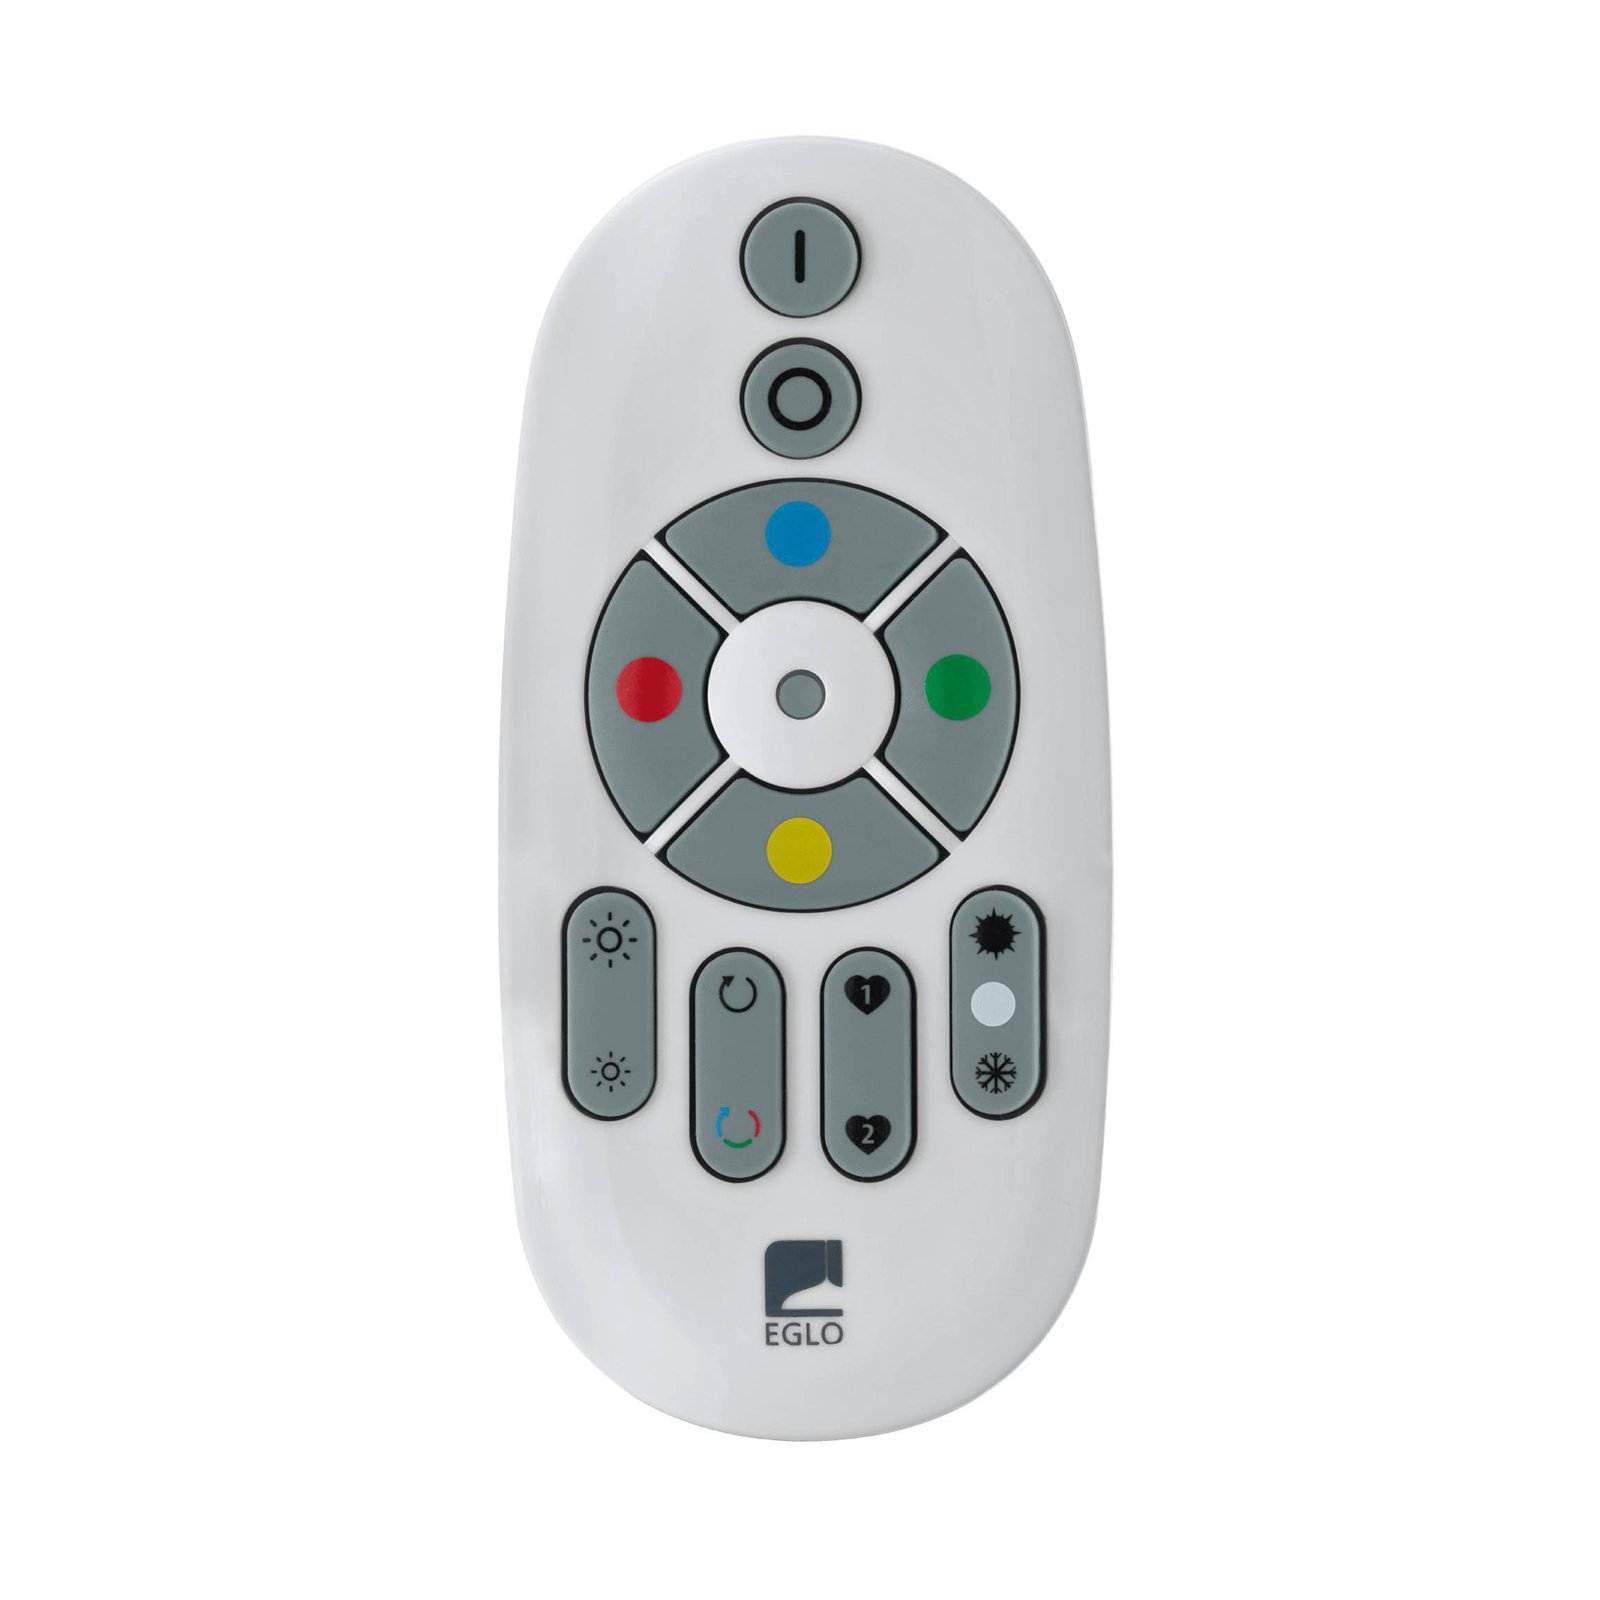 EGLO connect remote control